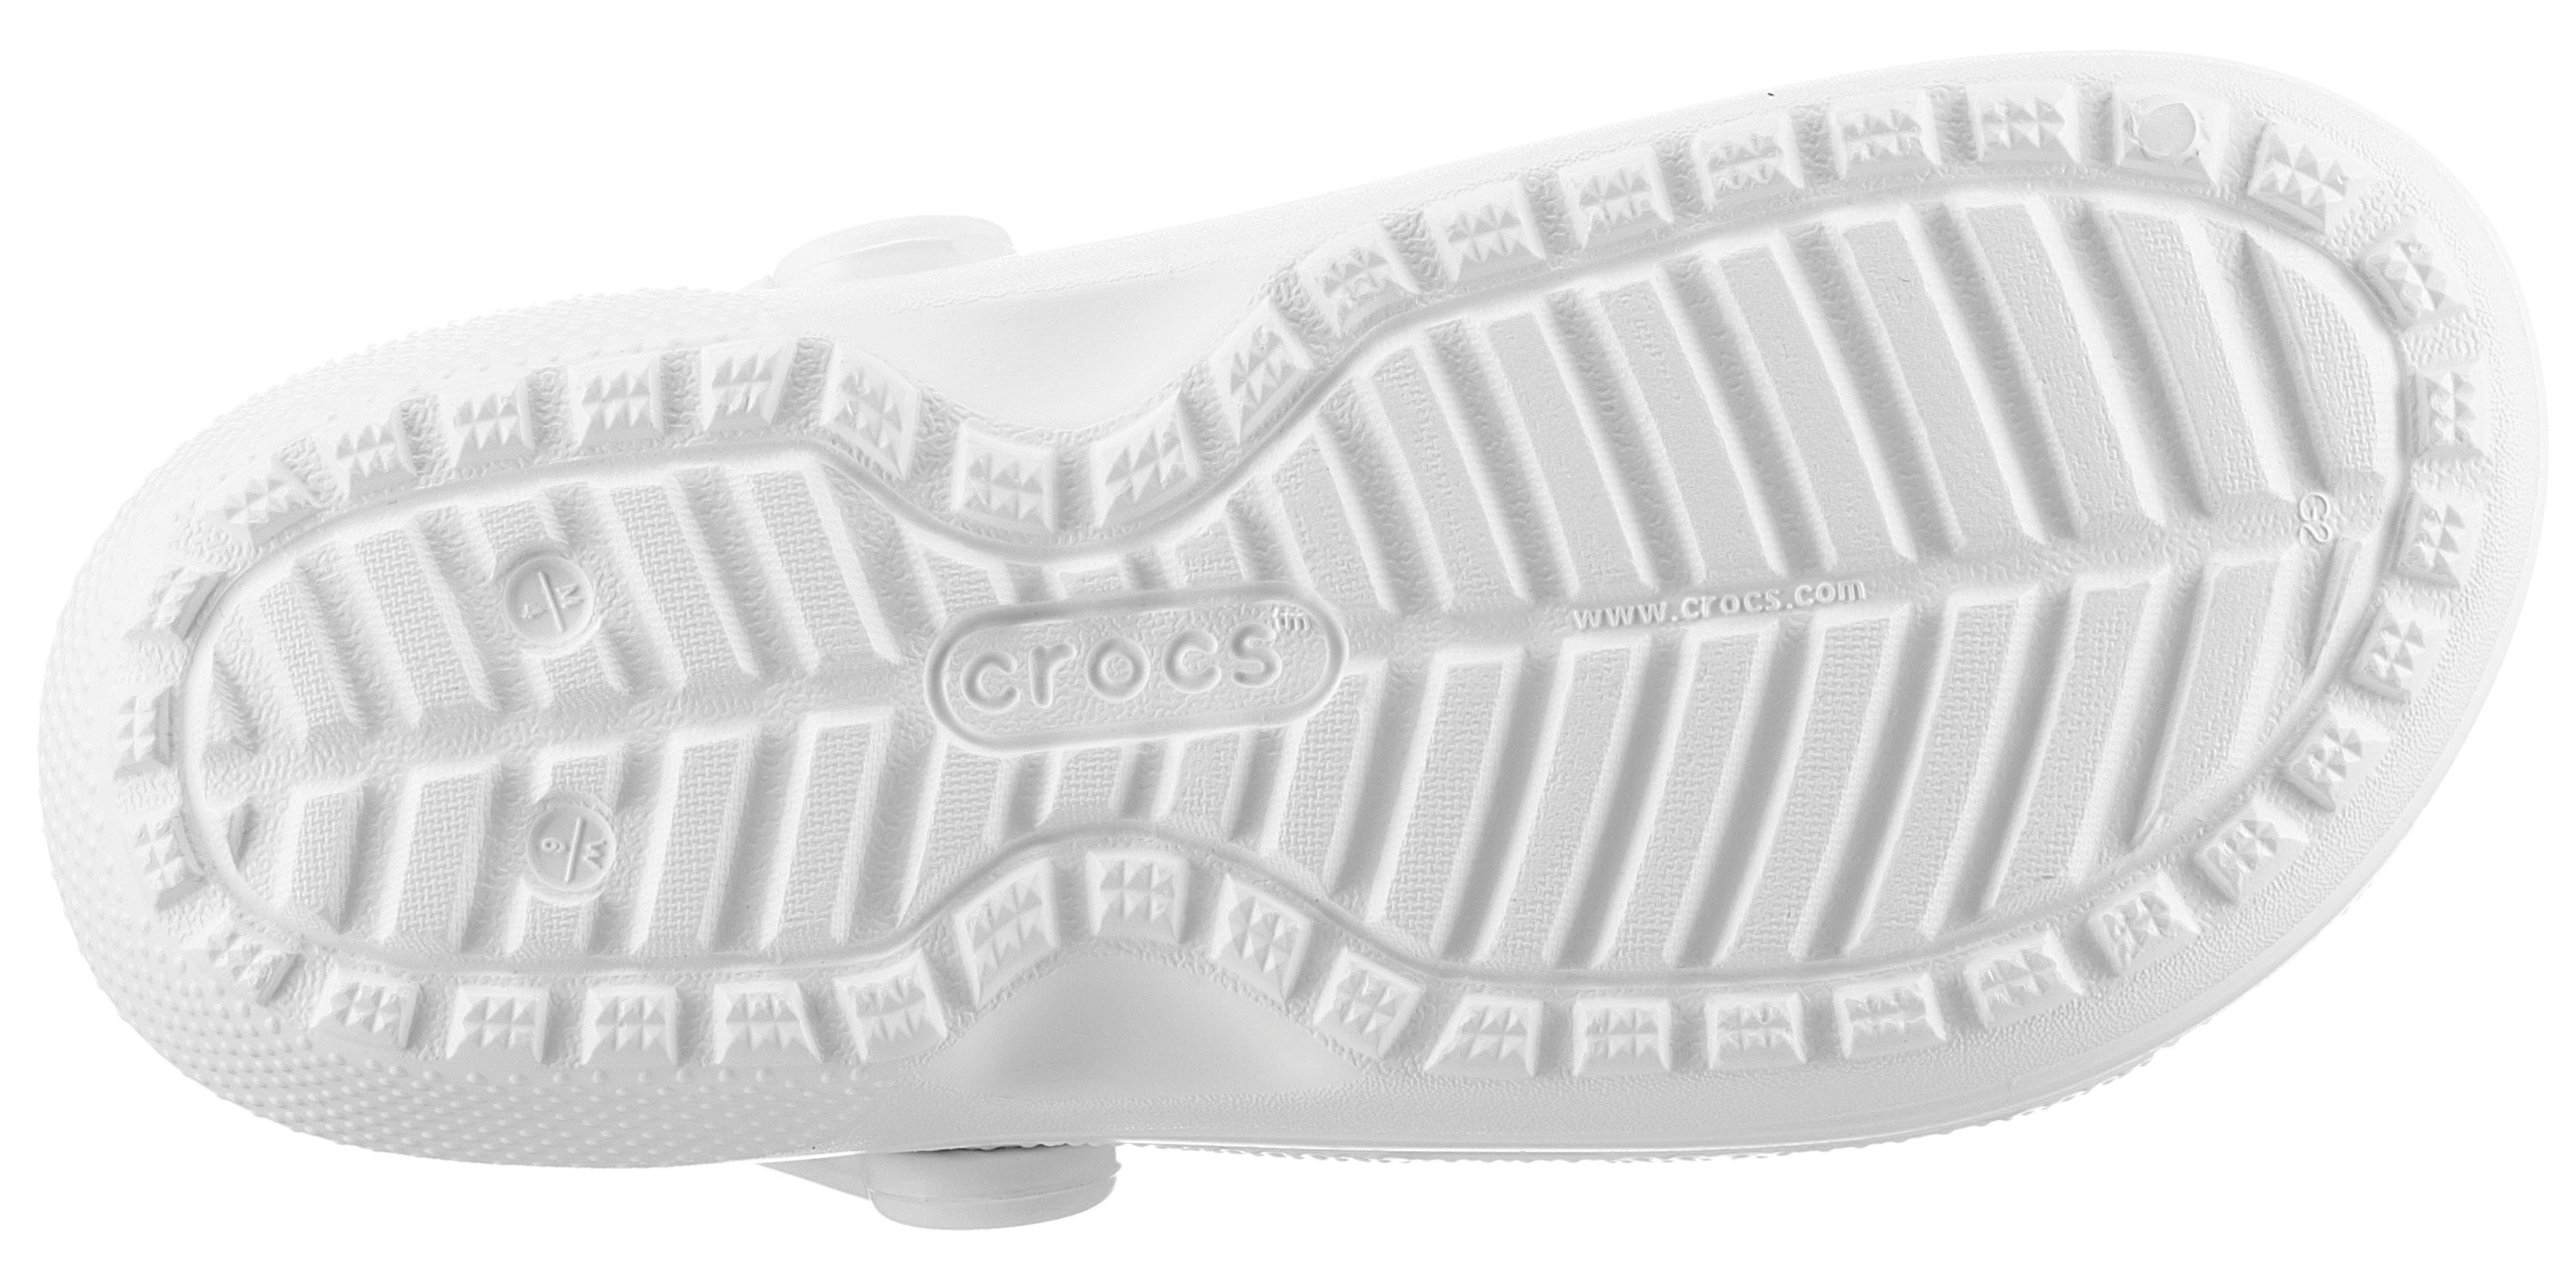 Clog Hausschuh Crocs Fellimitat kuscheligem weiß-grau mit Classic Lined